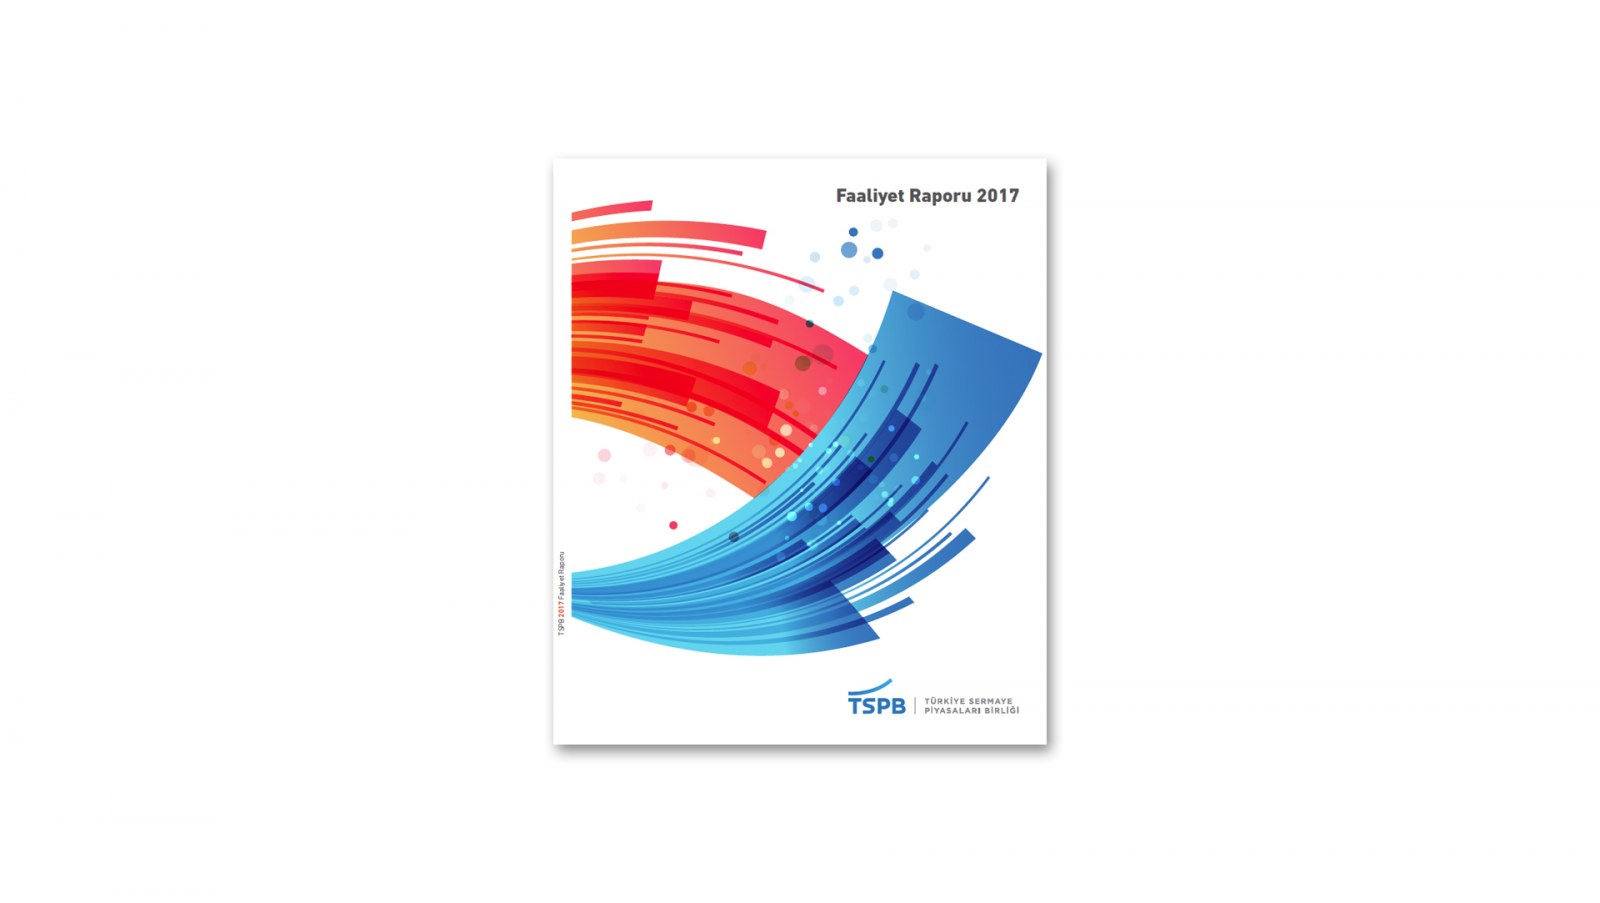 TÜRKİYE SERMAYE PİYASALARI BİRLİĞİ / 2017 Faaliyet Raporu / 2017 Annual Report